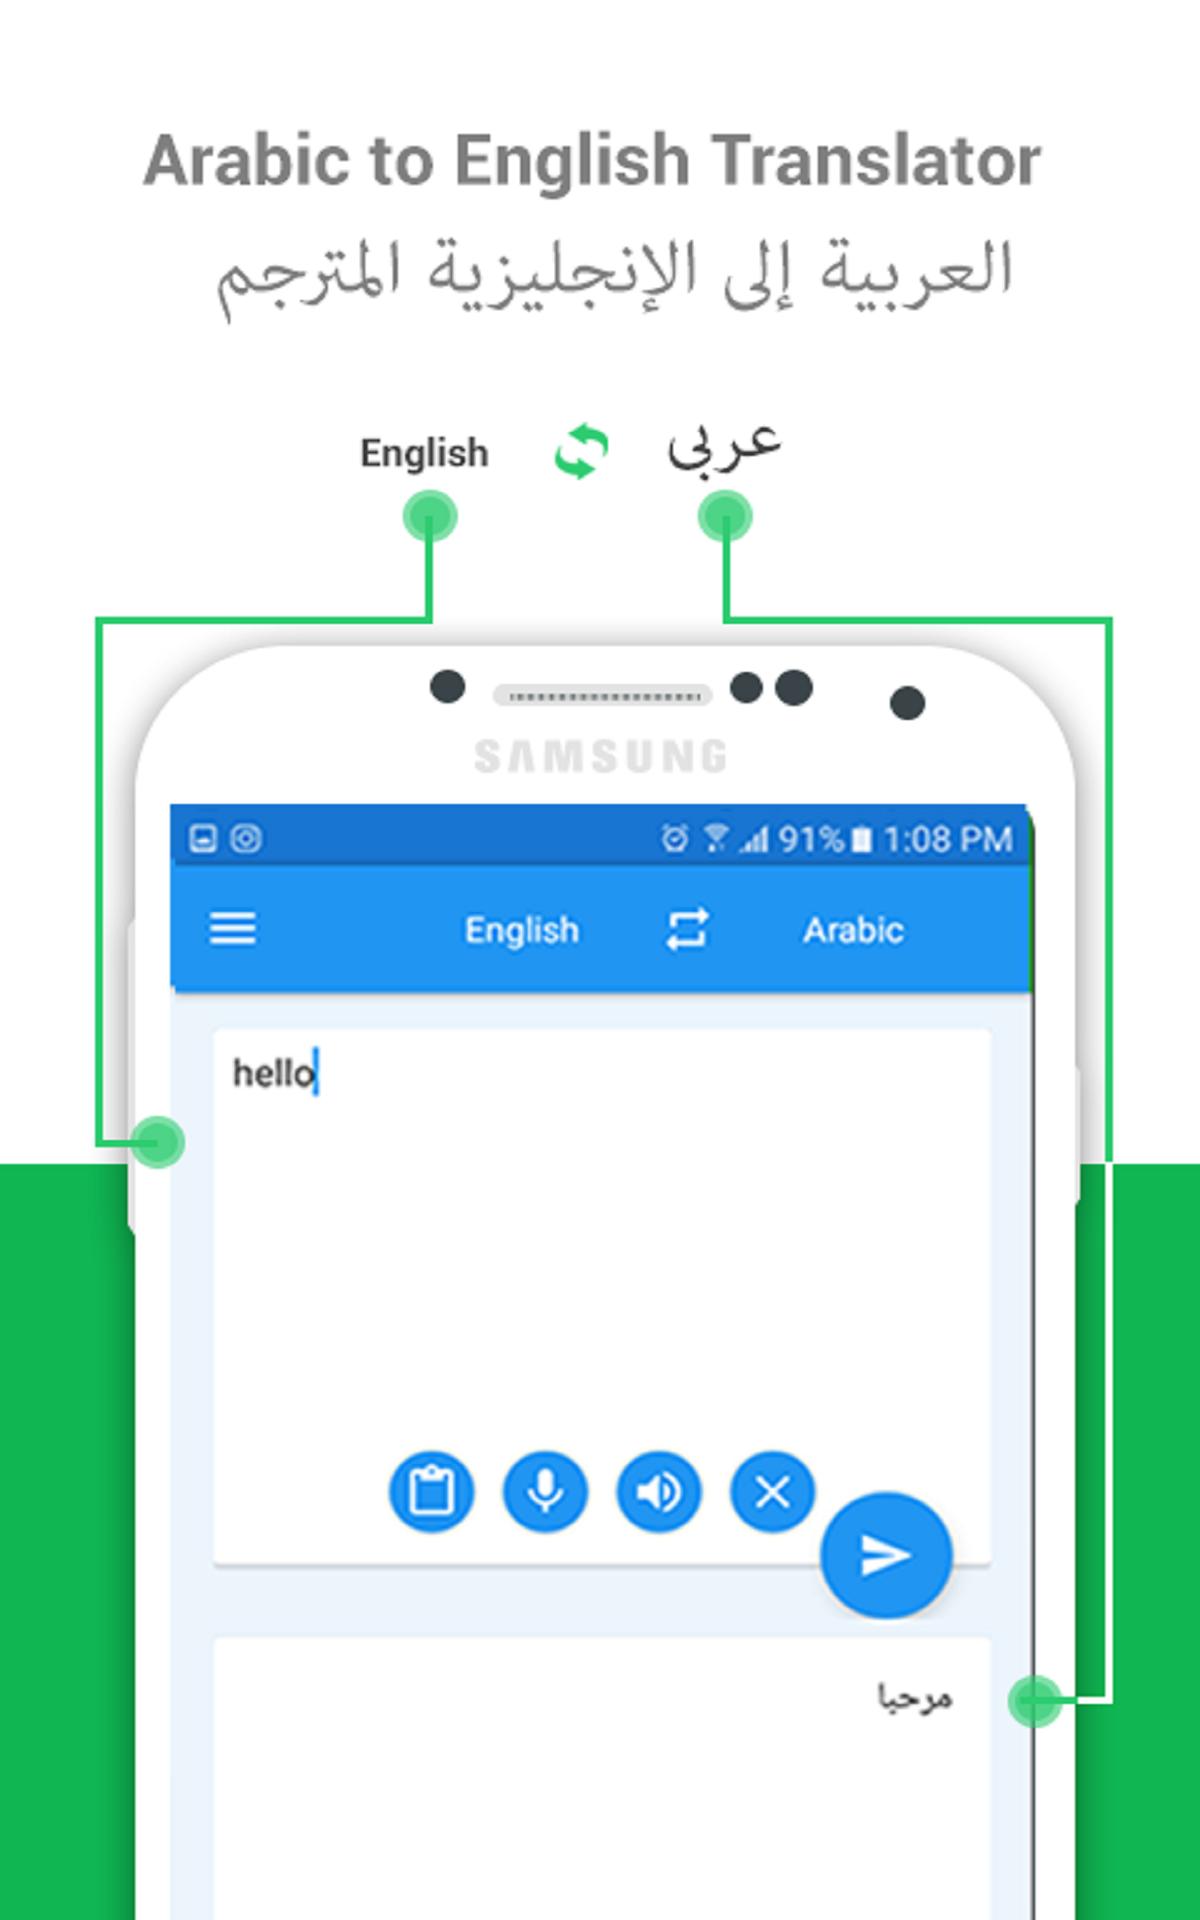 مترجم عربي انجليزي for Android - APK Download